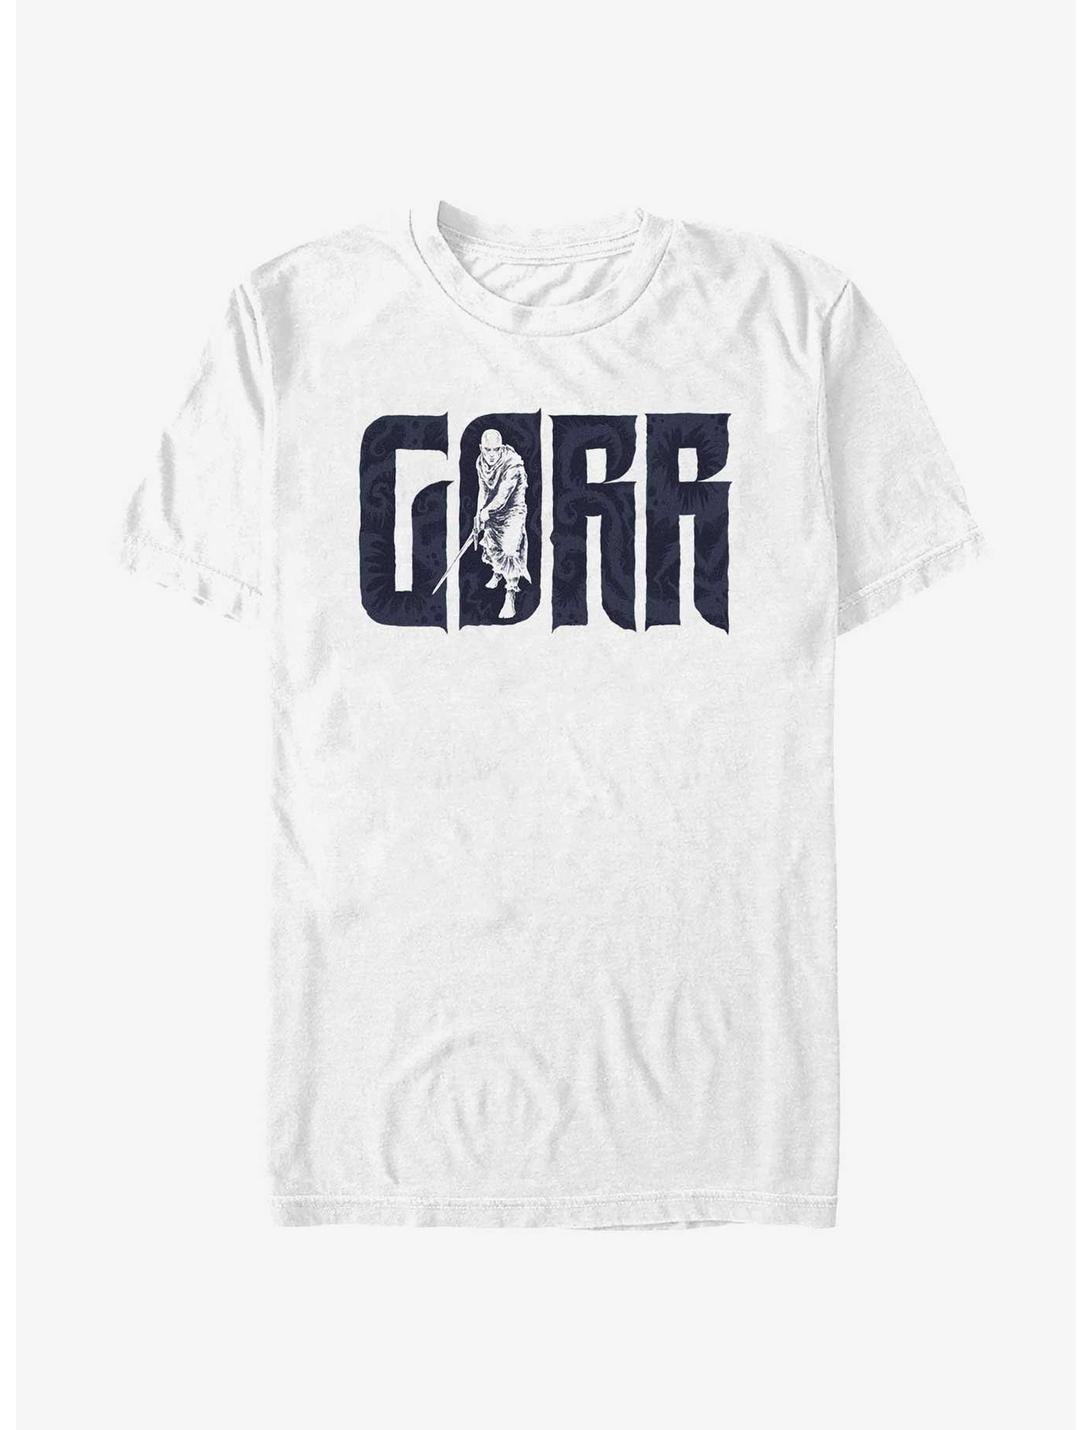 Marvel Thor Gorr T-Shirt, WHITE, hi-res